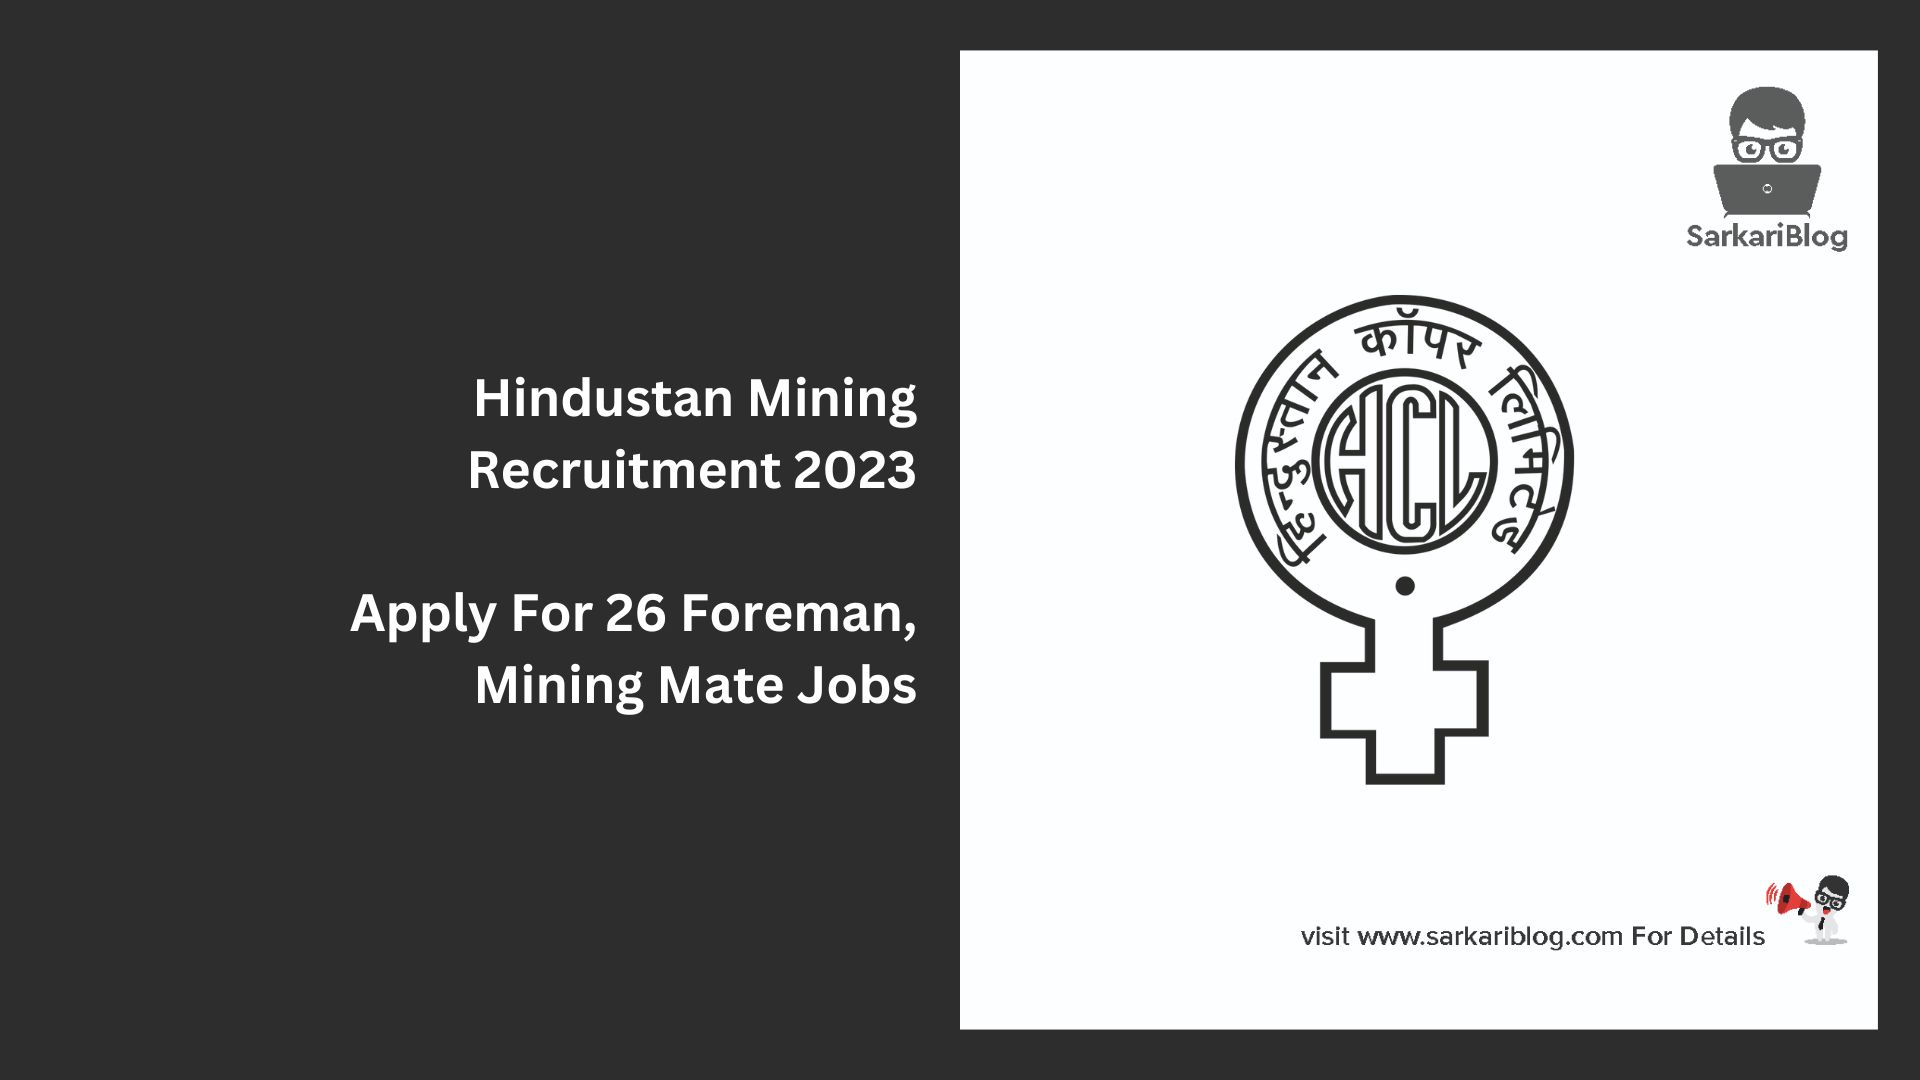 Hindustan Mining Recruitment 2023